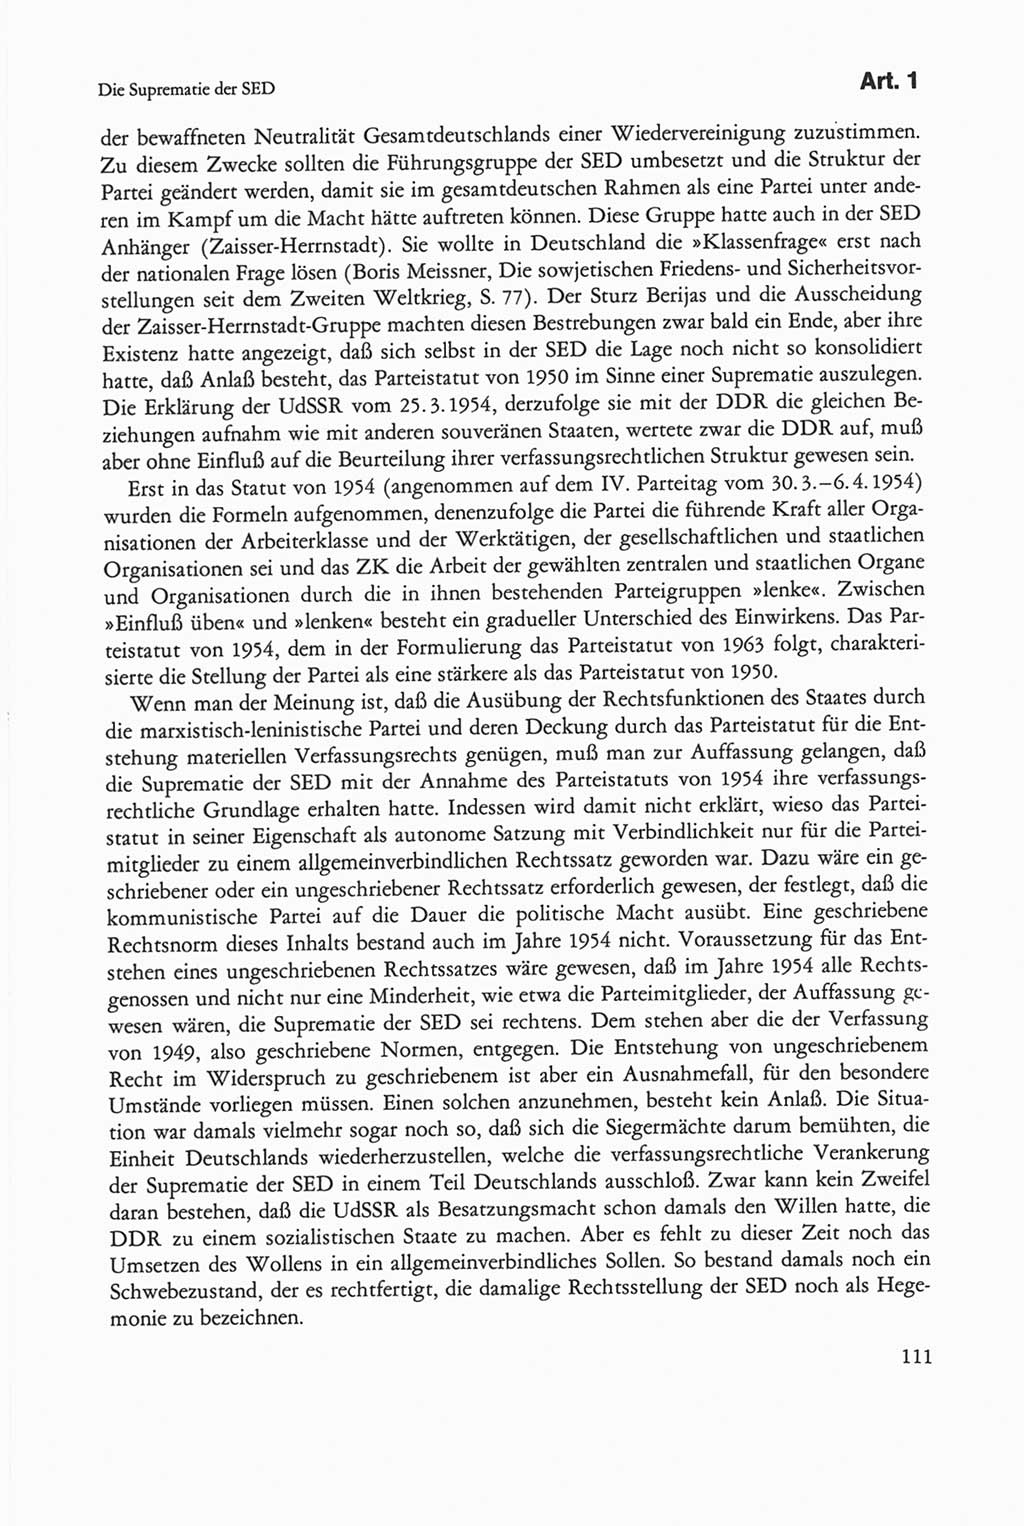 Die sozialistische Verfassung der Deutschen Demokratischen Republik (DDR), Kommentar mit einem Nachtrag 1997, Seite 111 (Soz. Verf. DDR Komm. Nachtr. 1997, S. 111)